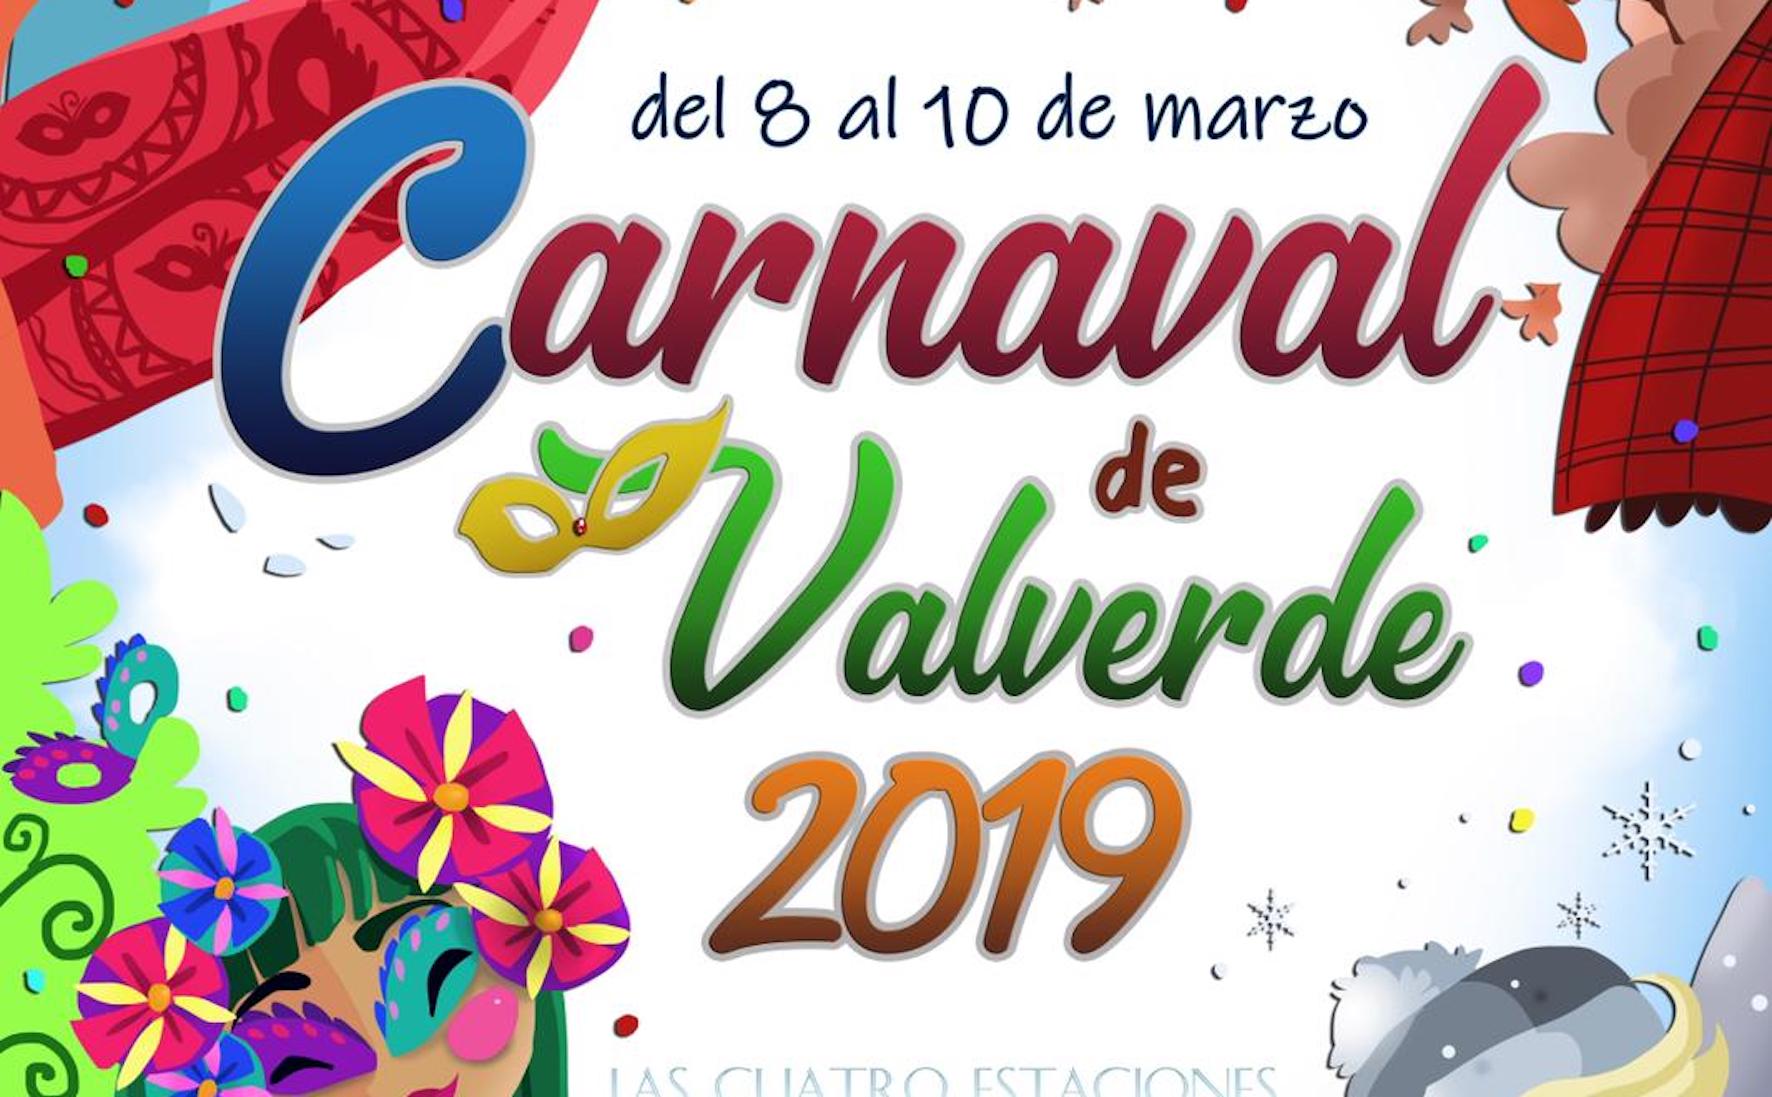 “Las estaciones carnavalescas” , cartel del Carnaval de Valverde 2019